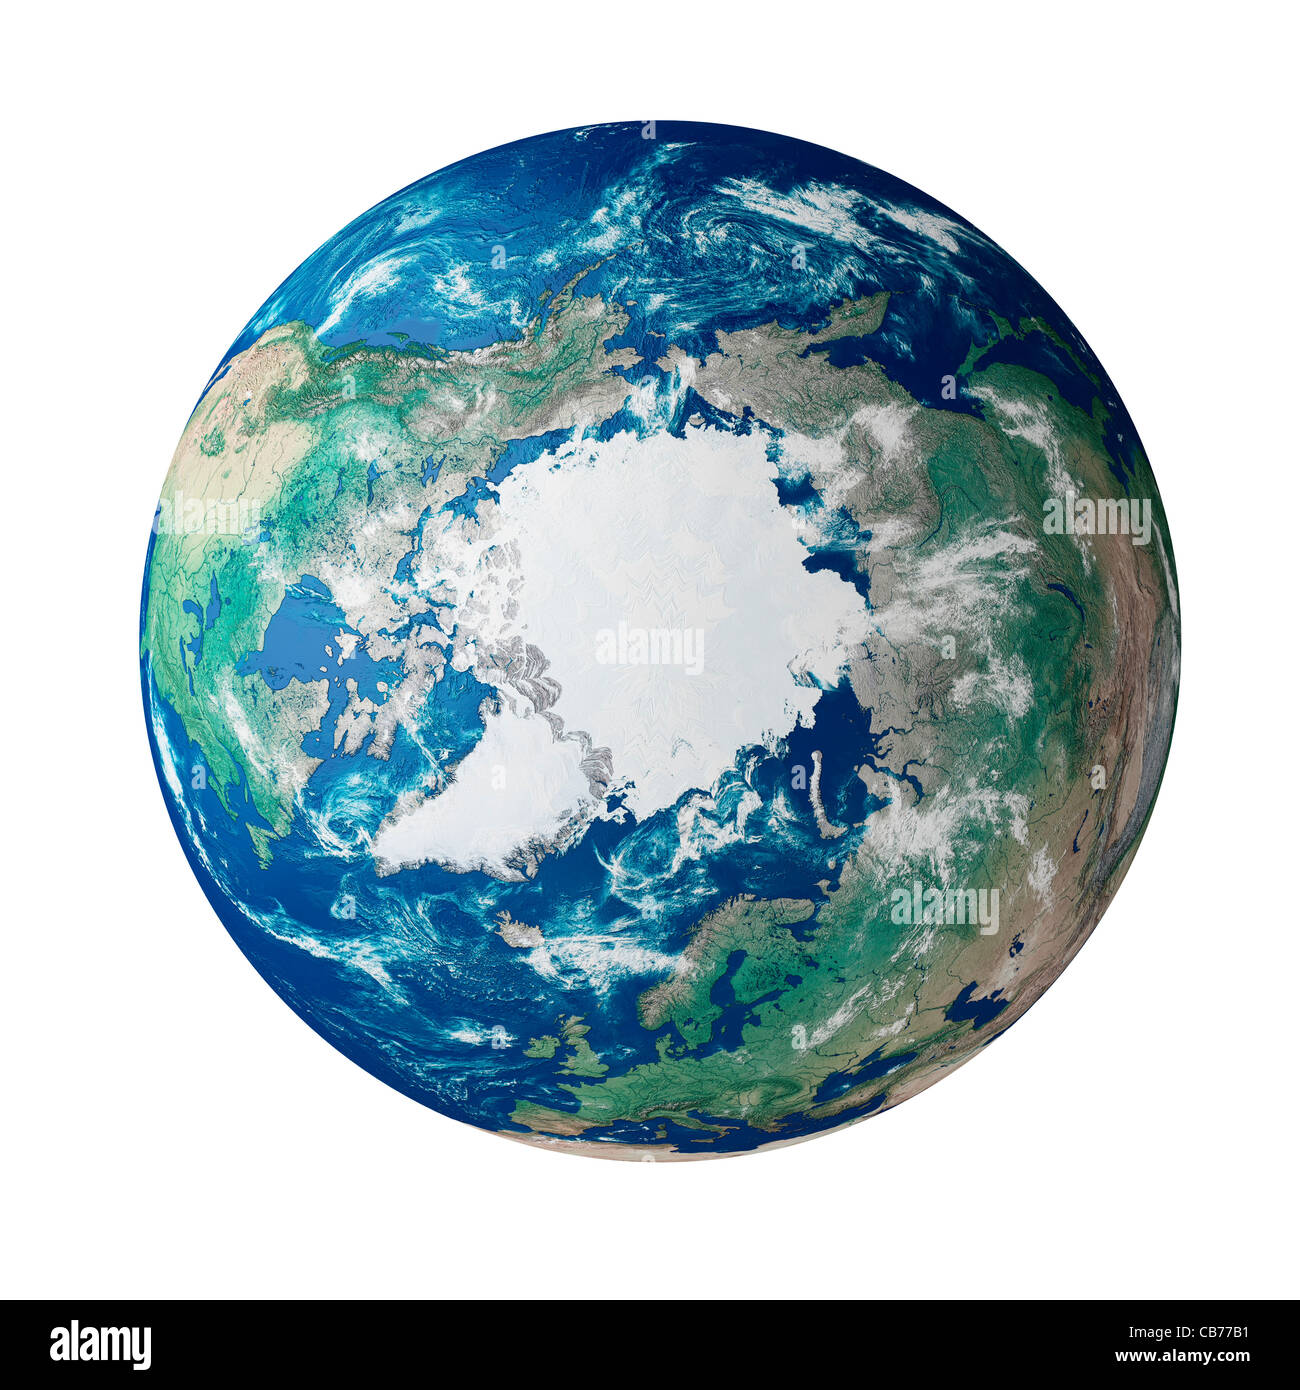 Globus mit der arktischen Region auf dem Planeten Erde Stockfoto